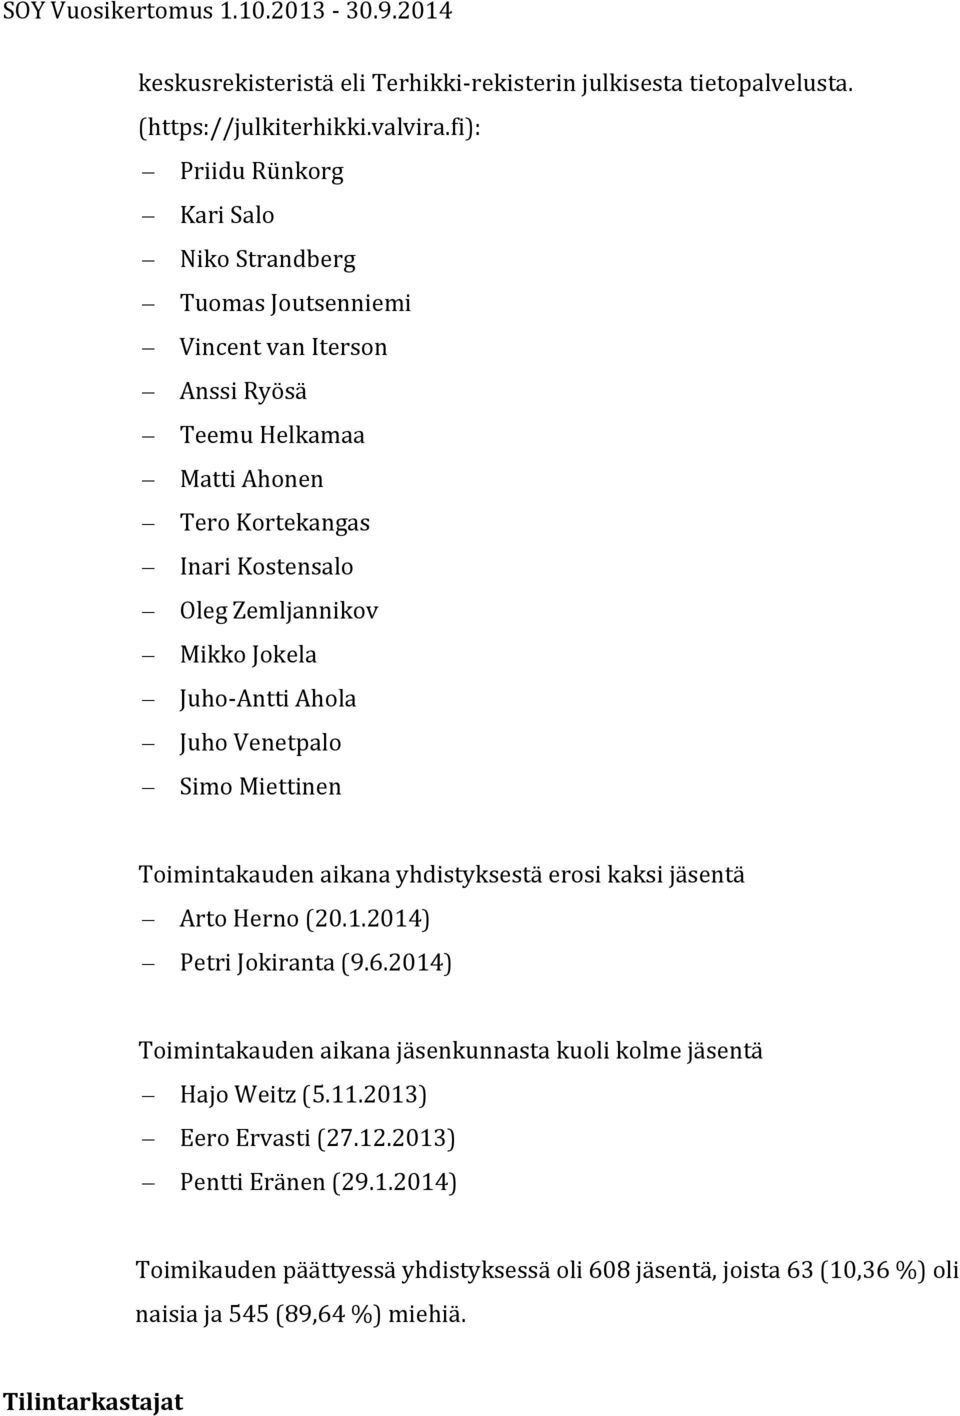 Zemljannikov Mikko Jokela Juho- Antti Ahola Juho Venetpalo Simo Miettinen Toimintakauden aikana yhdistyksestä erosi kaksi jäsentä Arto Herno (20.1.2014) Petri Jokiranta (9.6.